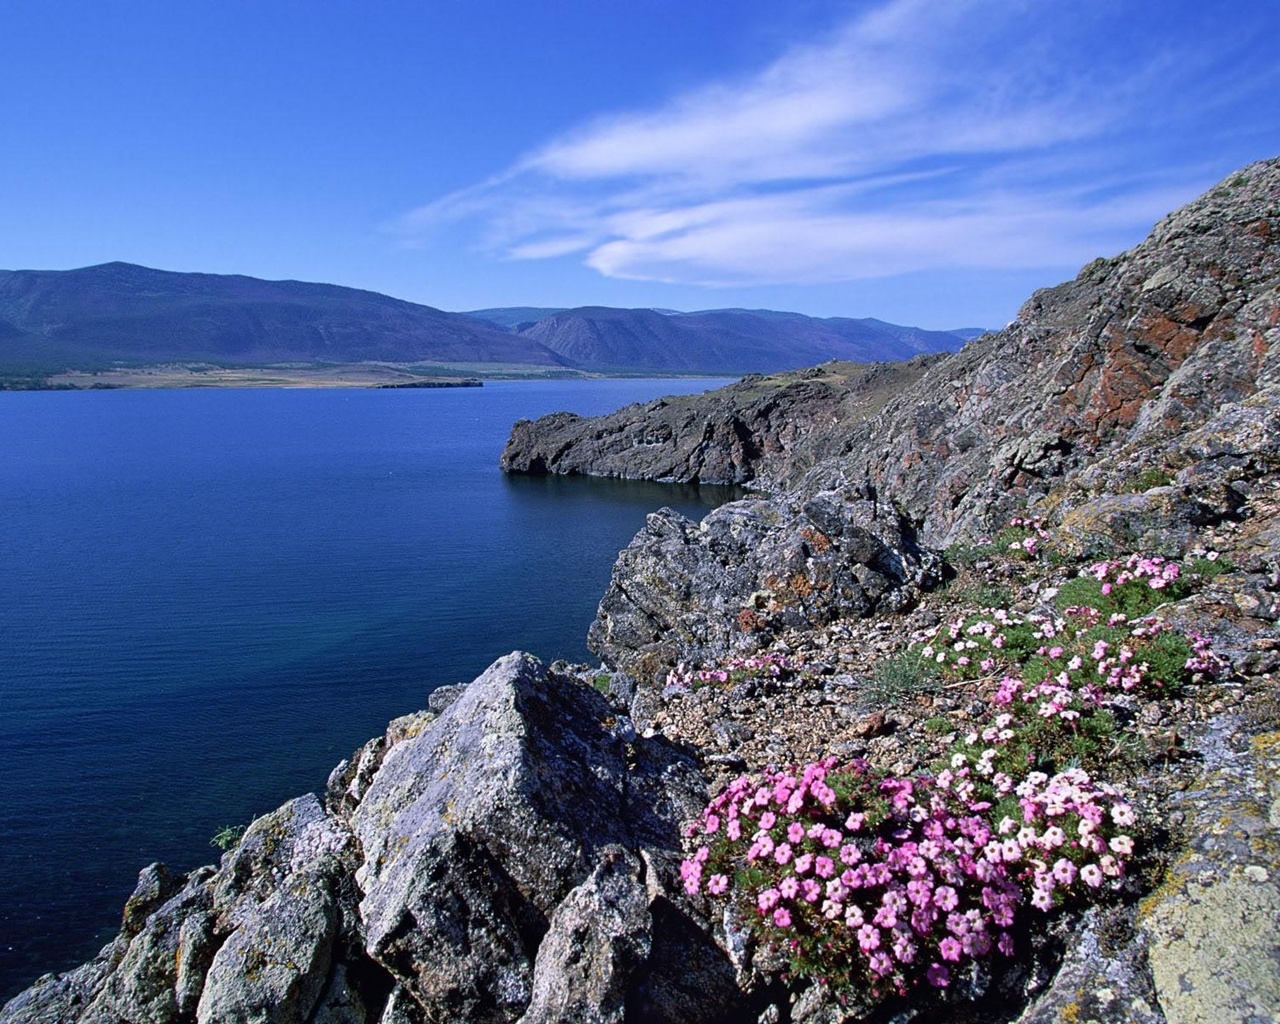 Rocky Shoreline Barakchin Island Lake Baikal for 1280 x 1024 resolution